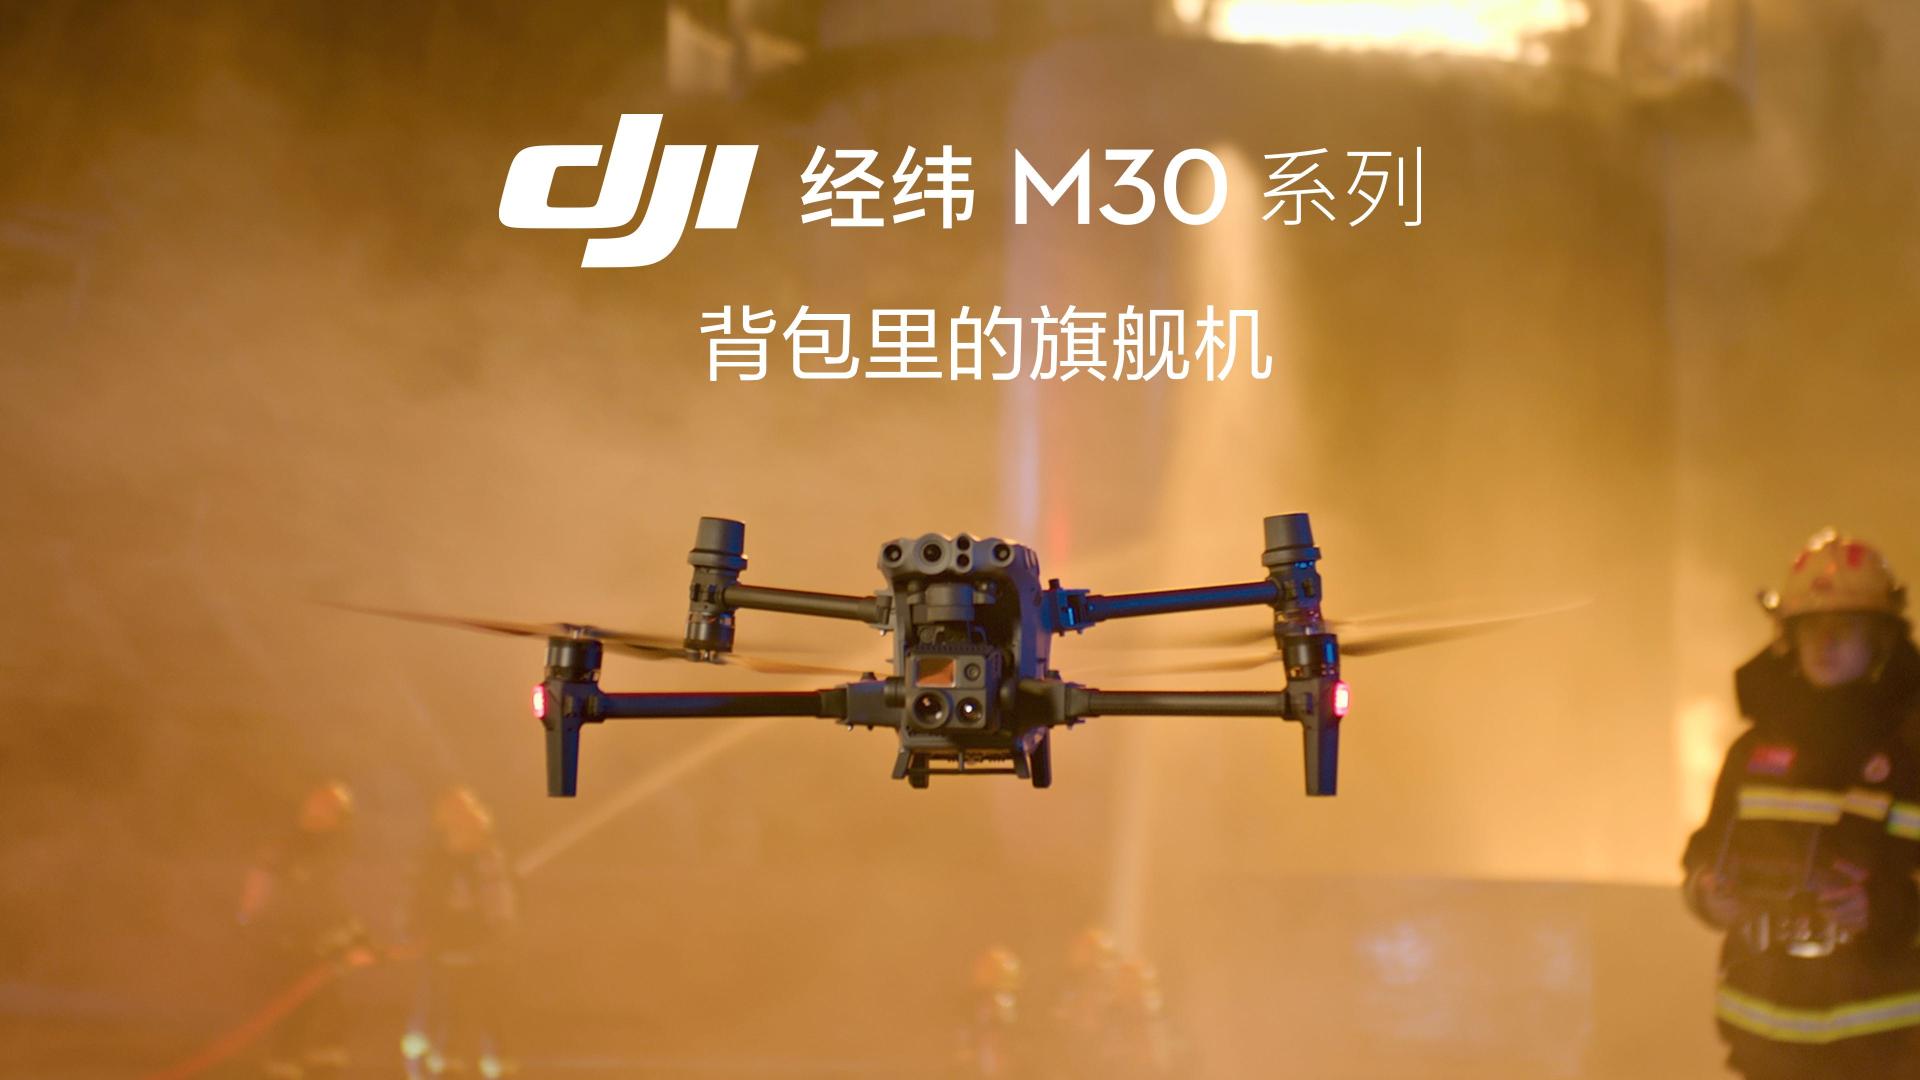 DJI大疆行业应用 M30 & 大疆机场 产品宣传片